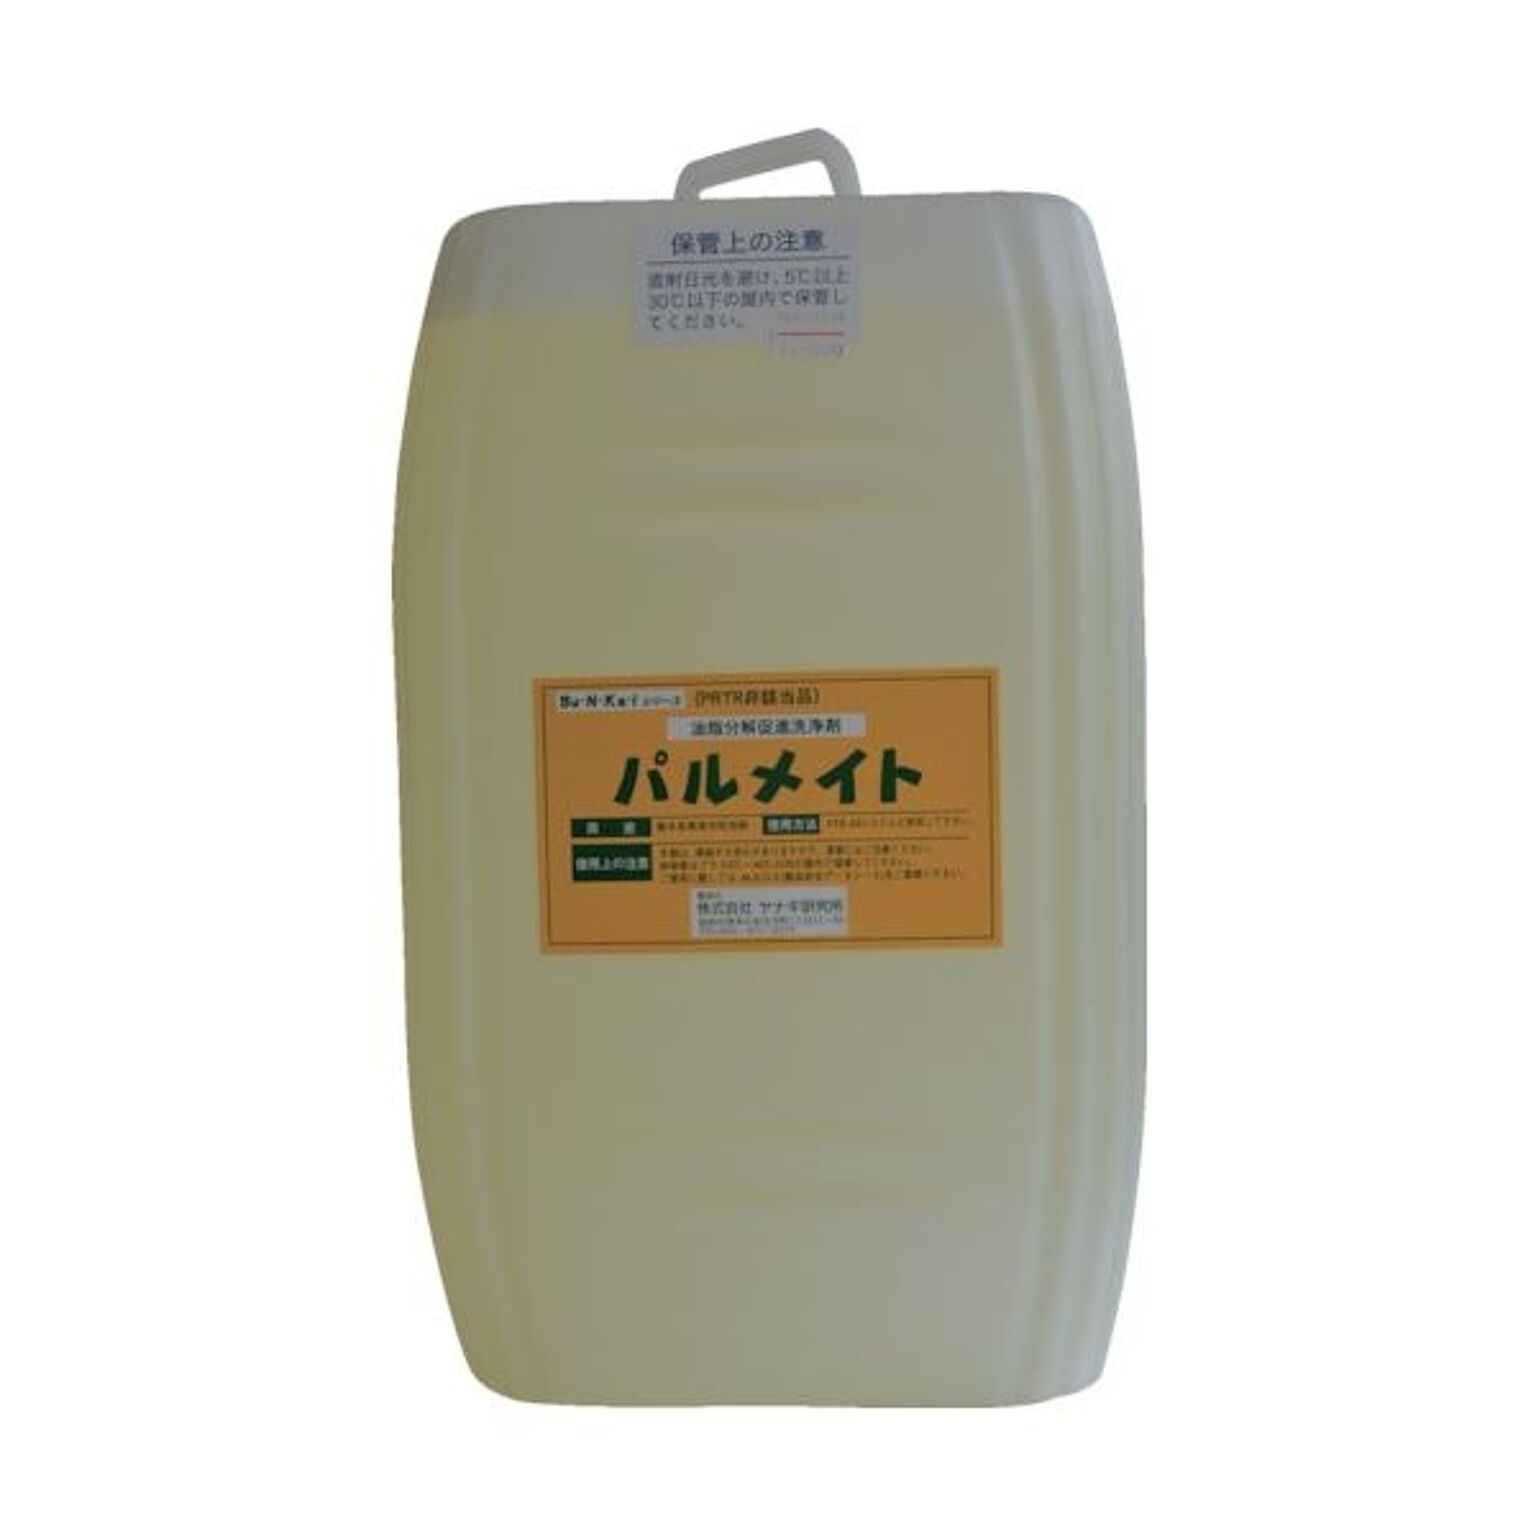 ヤナギ研究所 油脂分解促進剤 パルメイト18Lポリ缶 MST-100-E 1缶